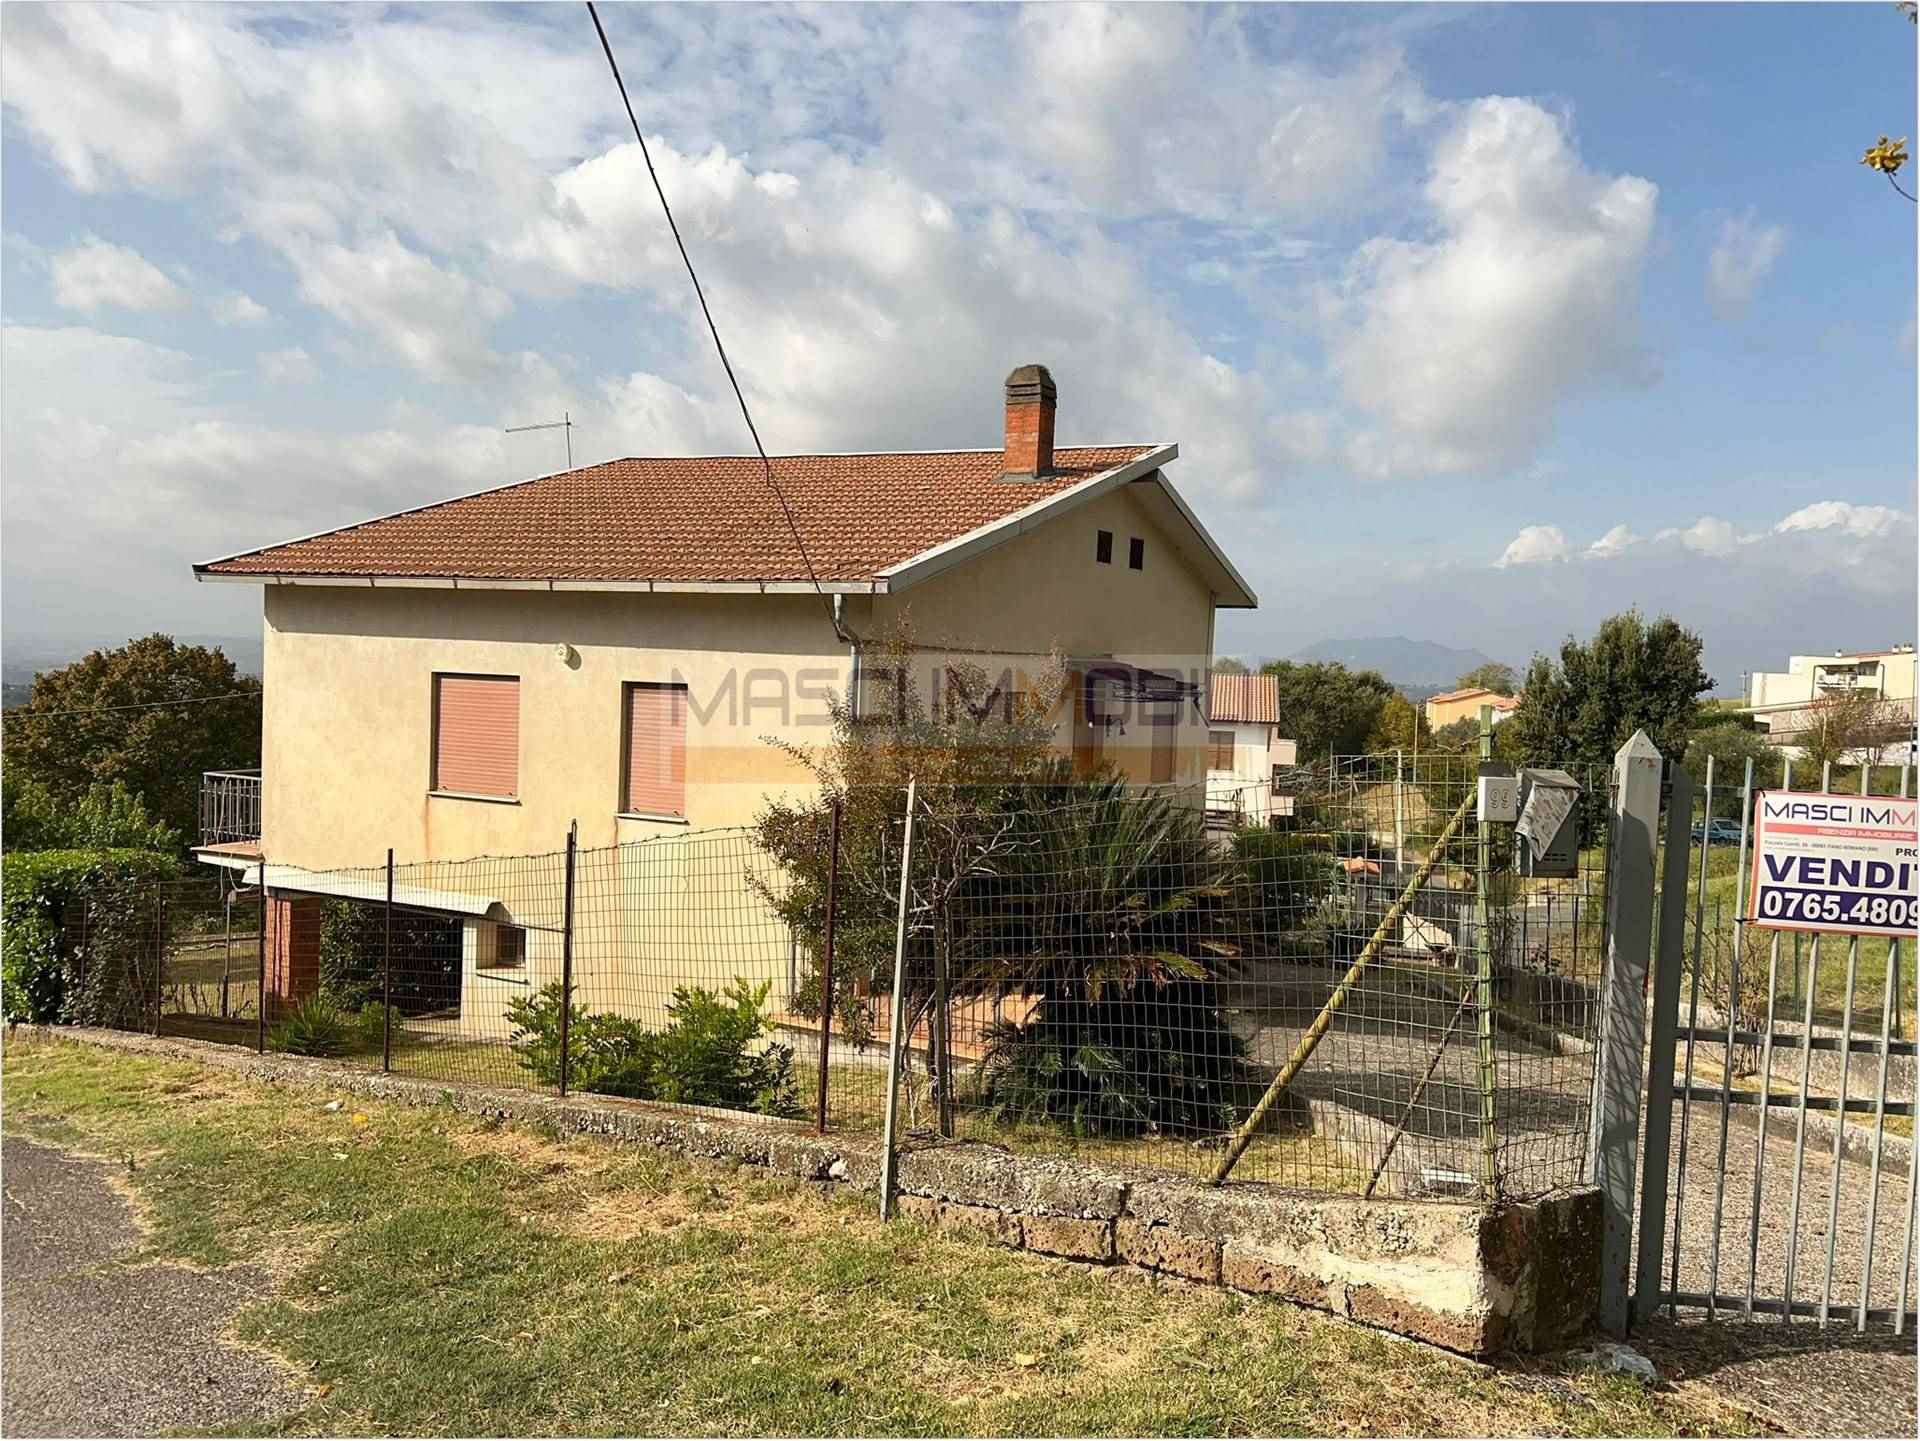 Villa in vendita a Montopoli di Sabina, 3 locali, prezzo € 170.000 | PortaleAgenzieImmobiliari.it